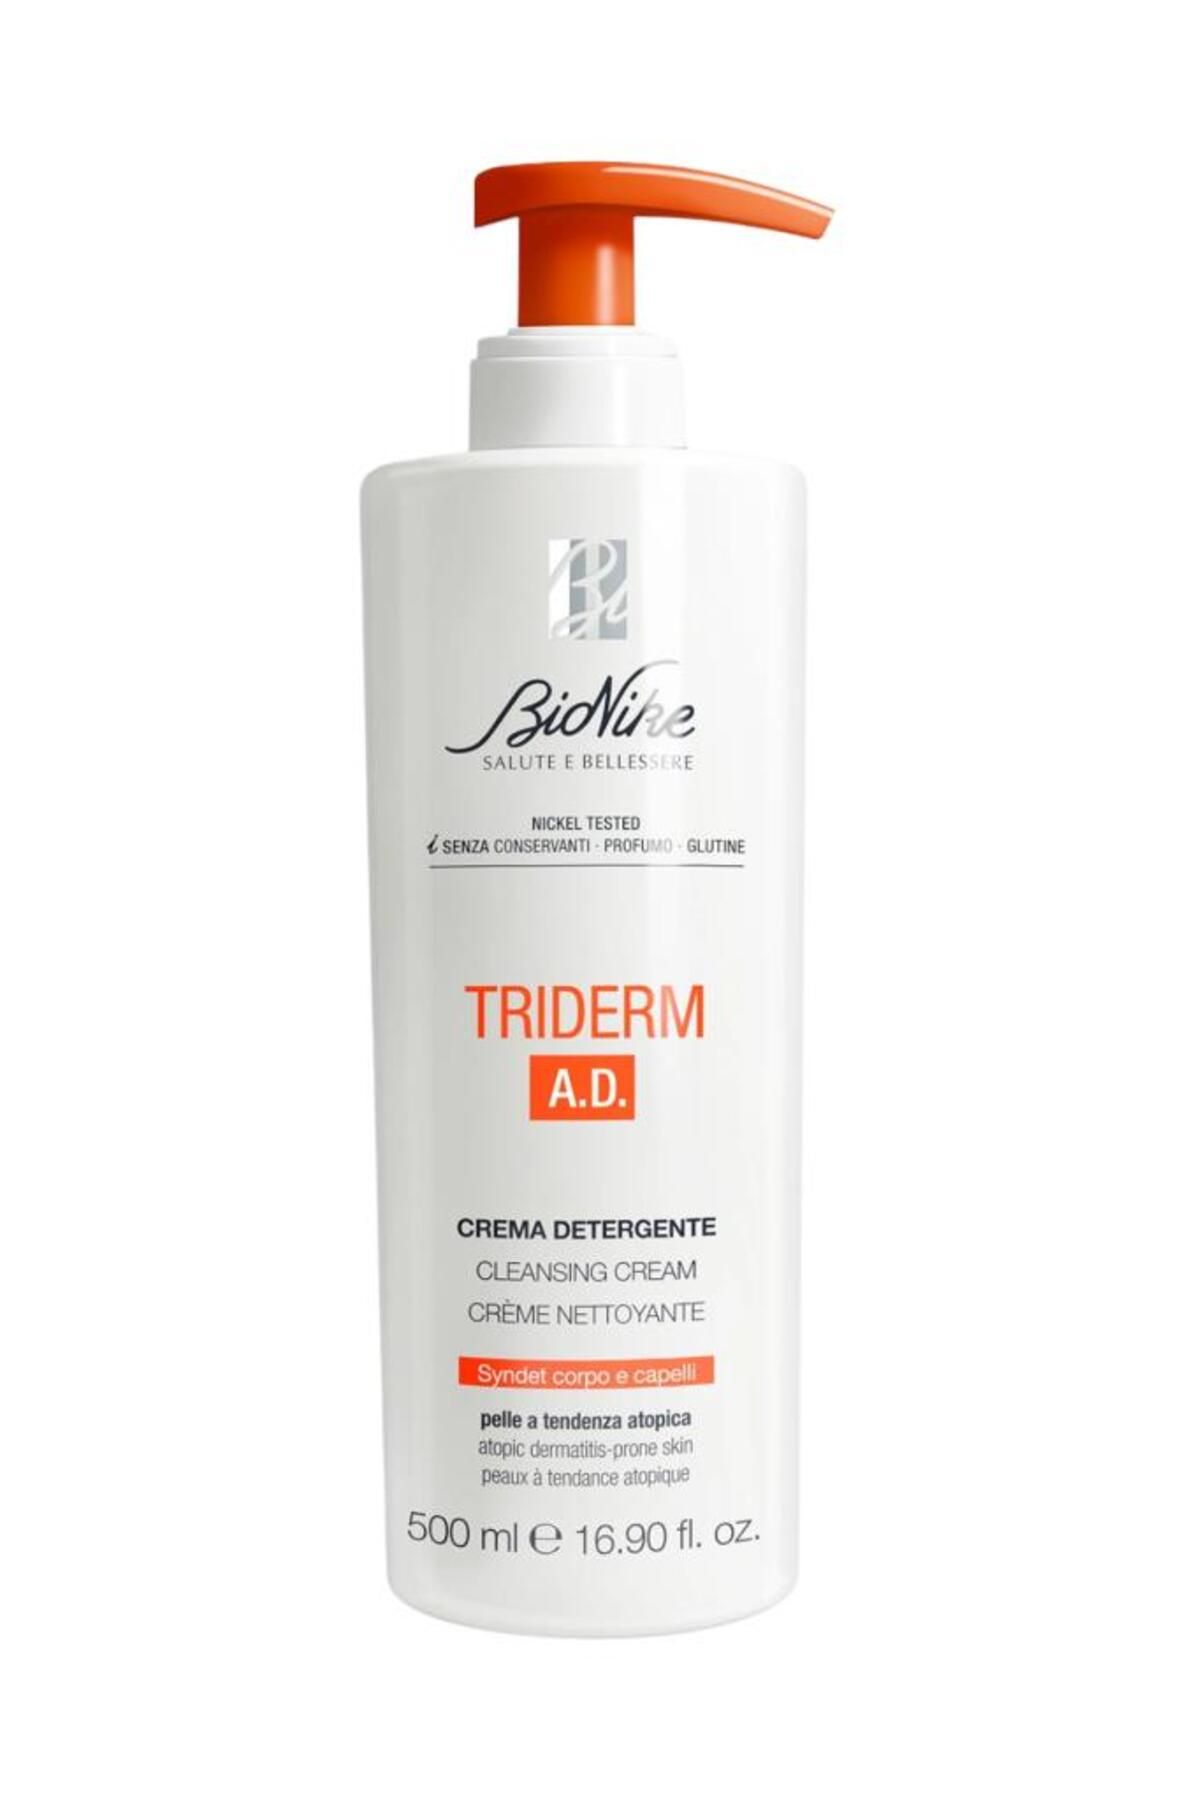 BioNike Triderm A.d. Cleansing Cream 500 ml